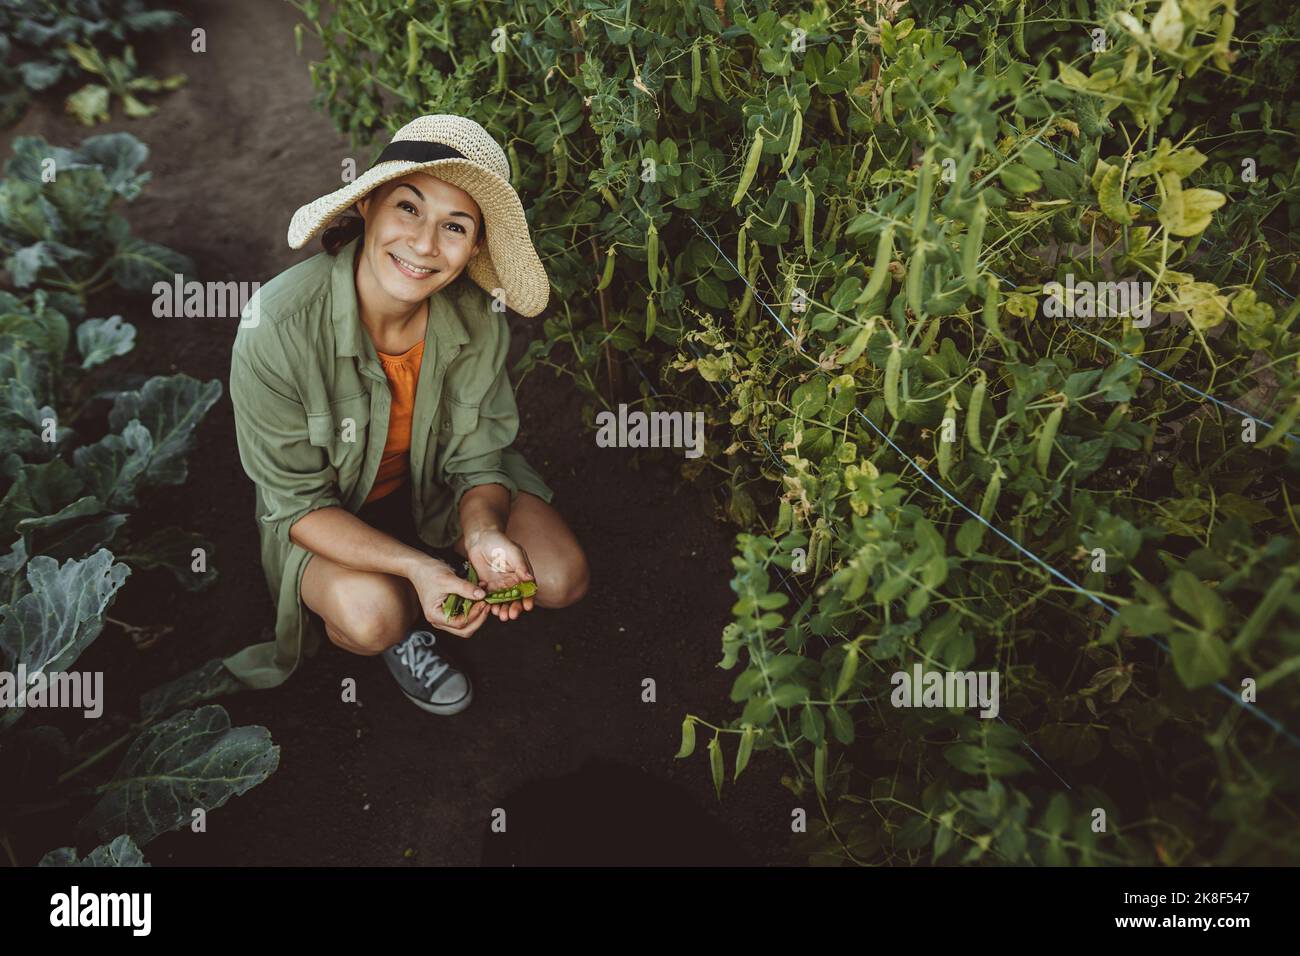 Lächelnde Frau mit Erbsenschoten inmitten grüner Pflanzen im Garten Stockfoto